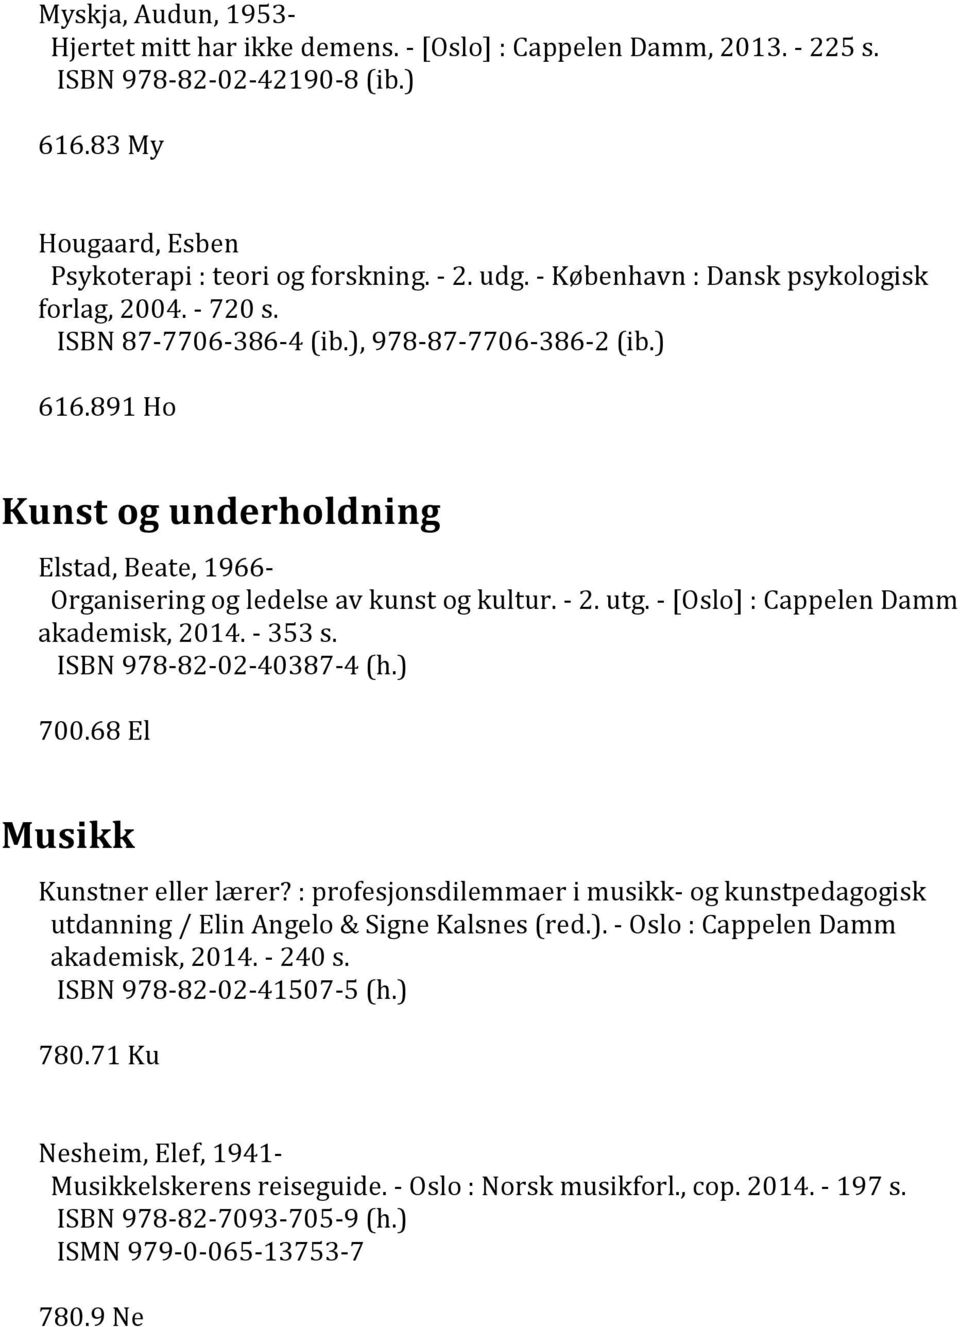 891 Ho Kunst og underholdning Elstad, Beate, 1966- Organisering og ledelse av kunst og kultur. - 2. utg. - [Oslo] : Cappelen Damm akademisk, 2014. - 353 s. ISBN 978-82-02-40387-4 (h.) 700.